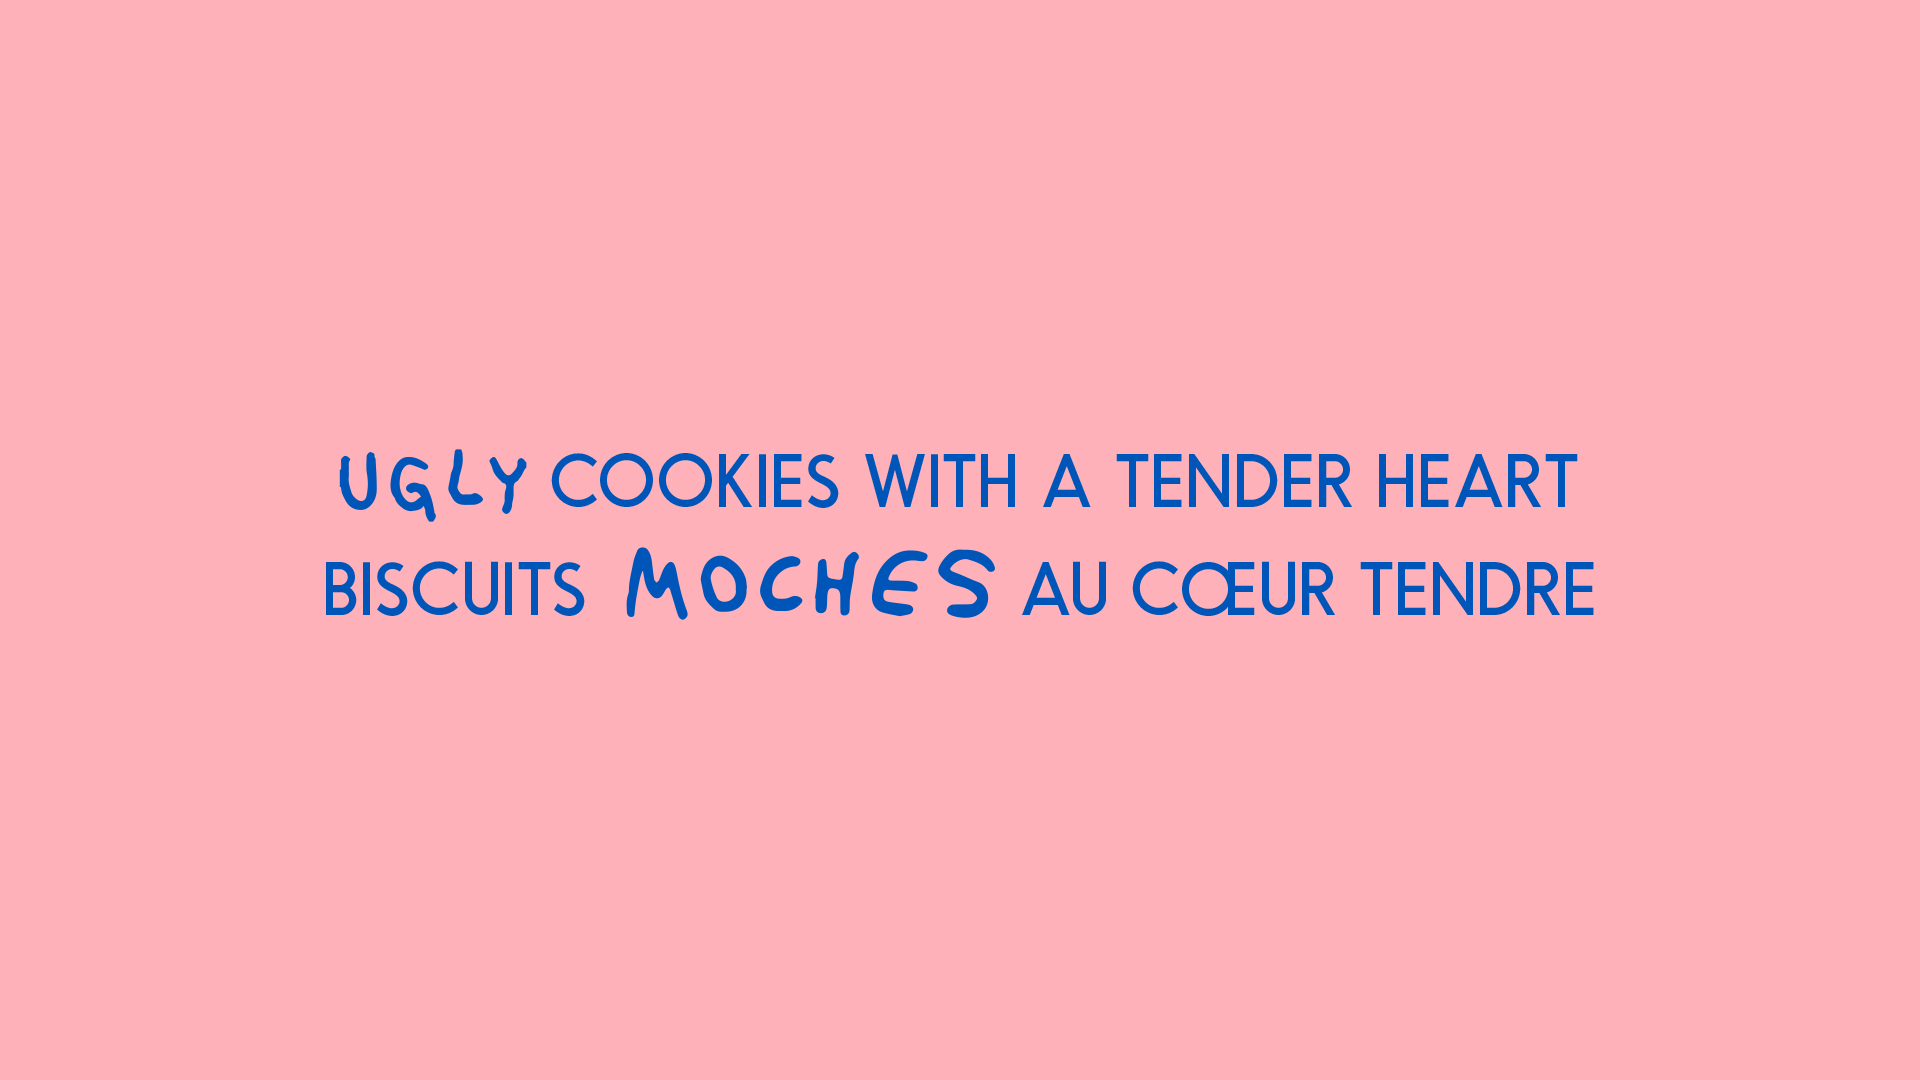 Biscuits moches au cœur tendre, un claim de positionnement simple et efficace.